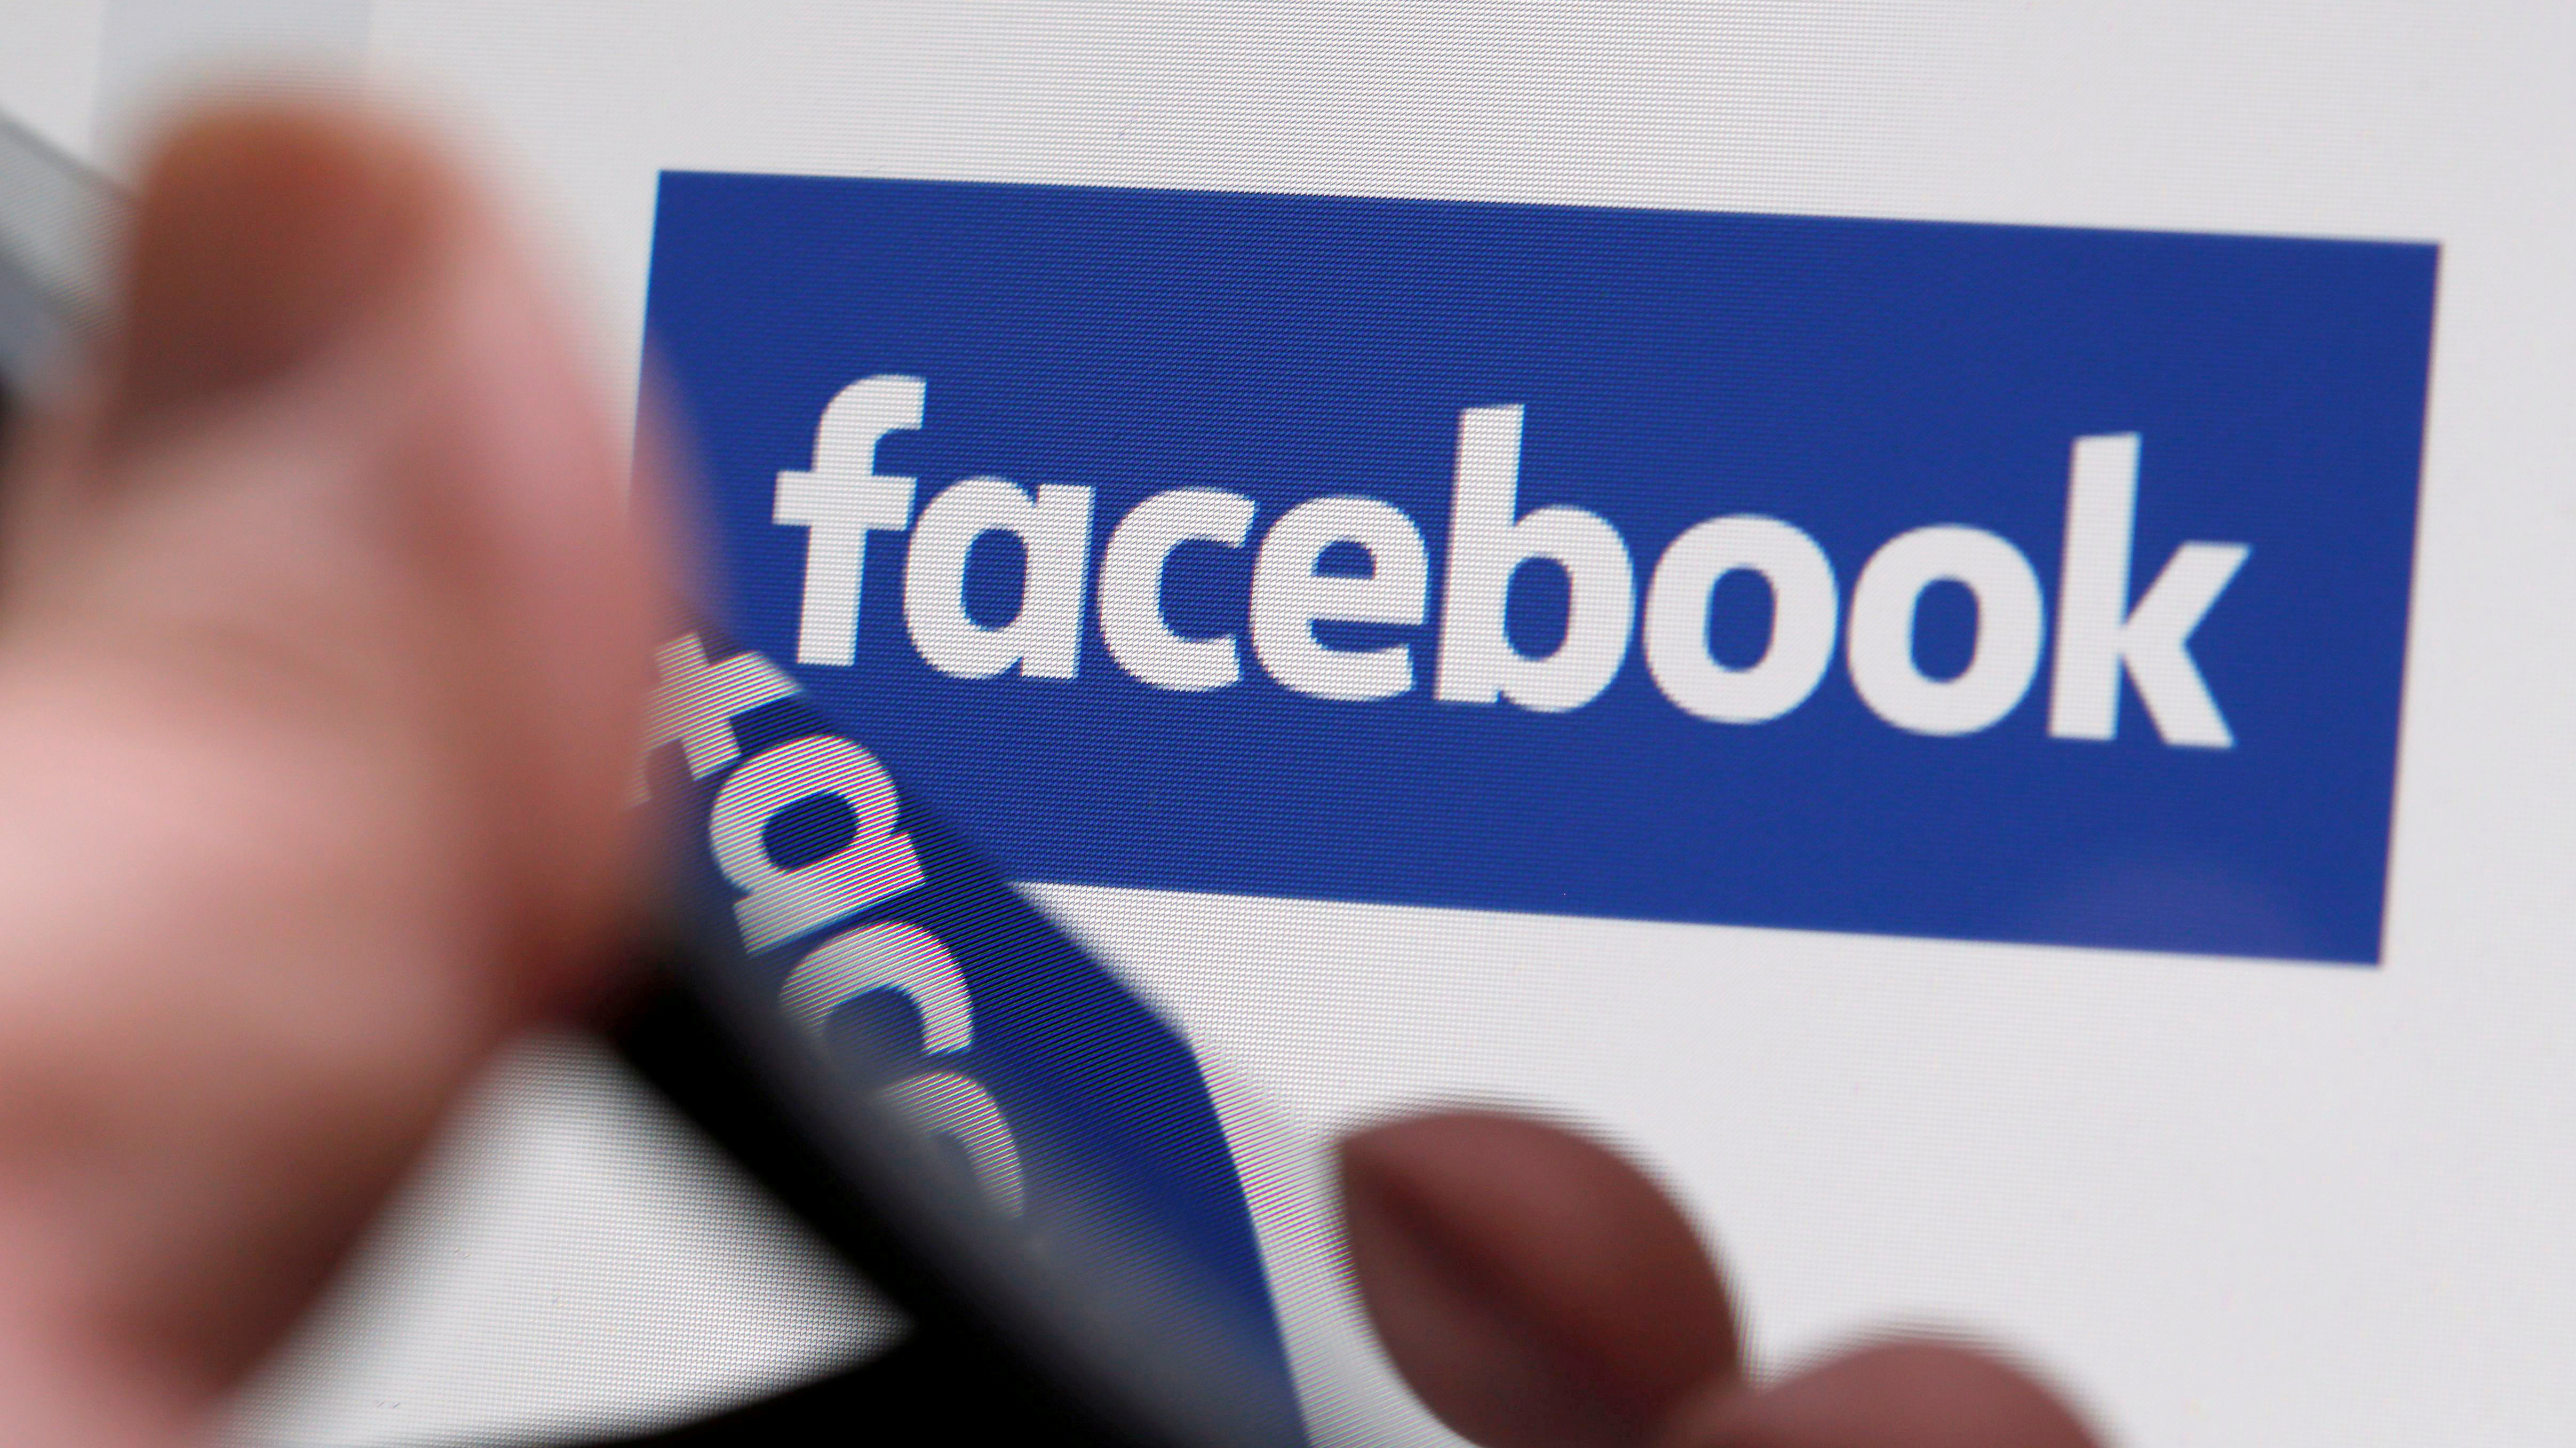 Facebook bytter utseende – slik skal det se ut nå